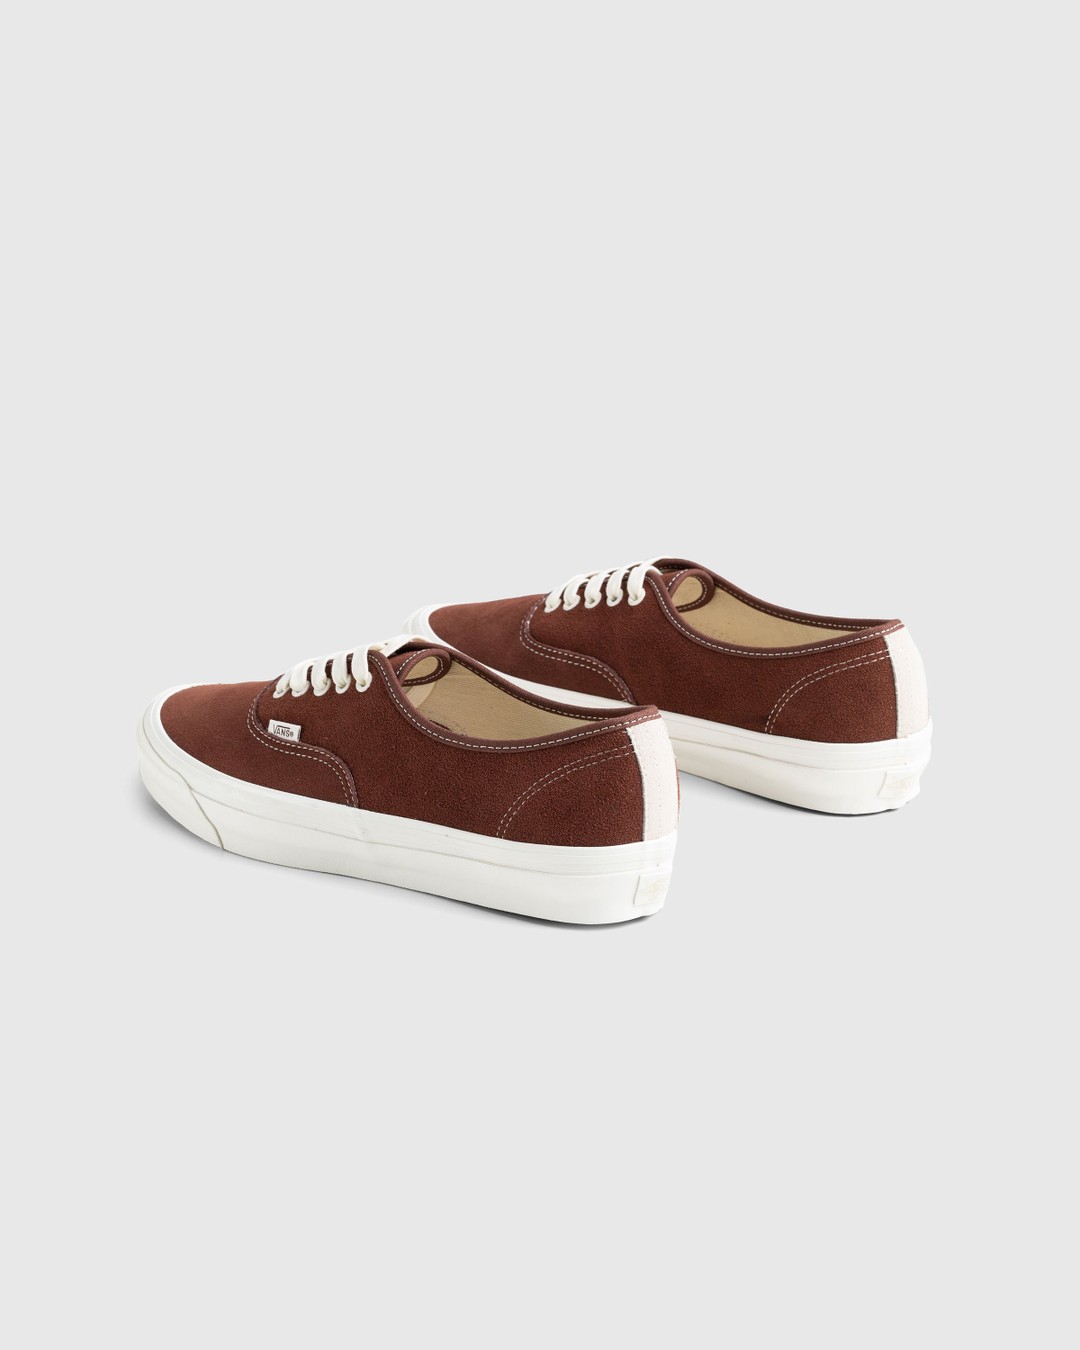 Vans – UA OG Authentic LX Suede Brown - Low Top Sneakers - Brown - Image 4